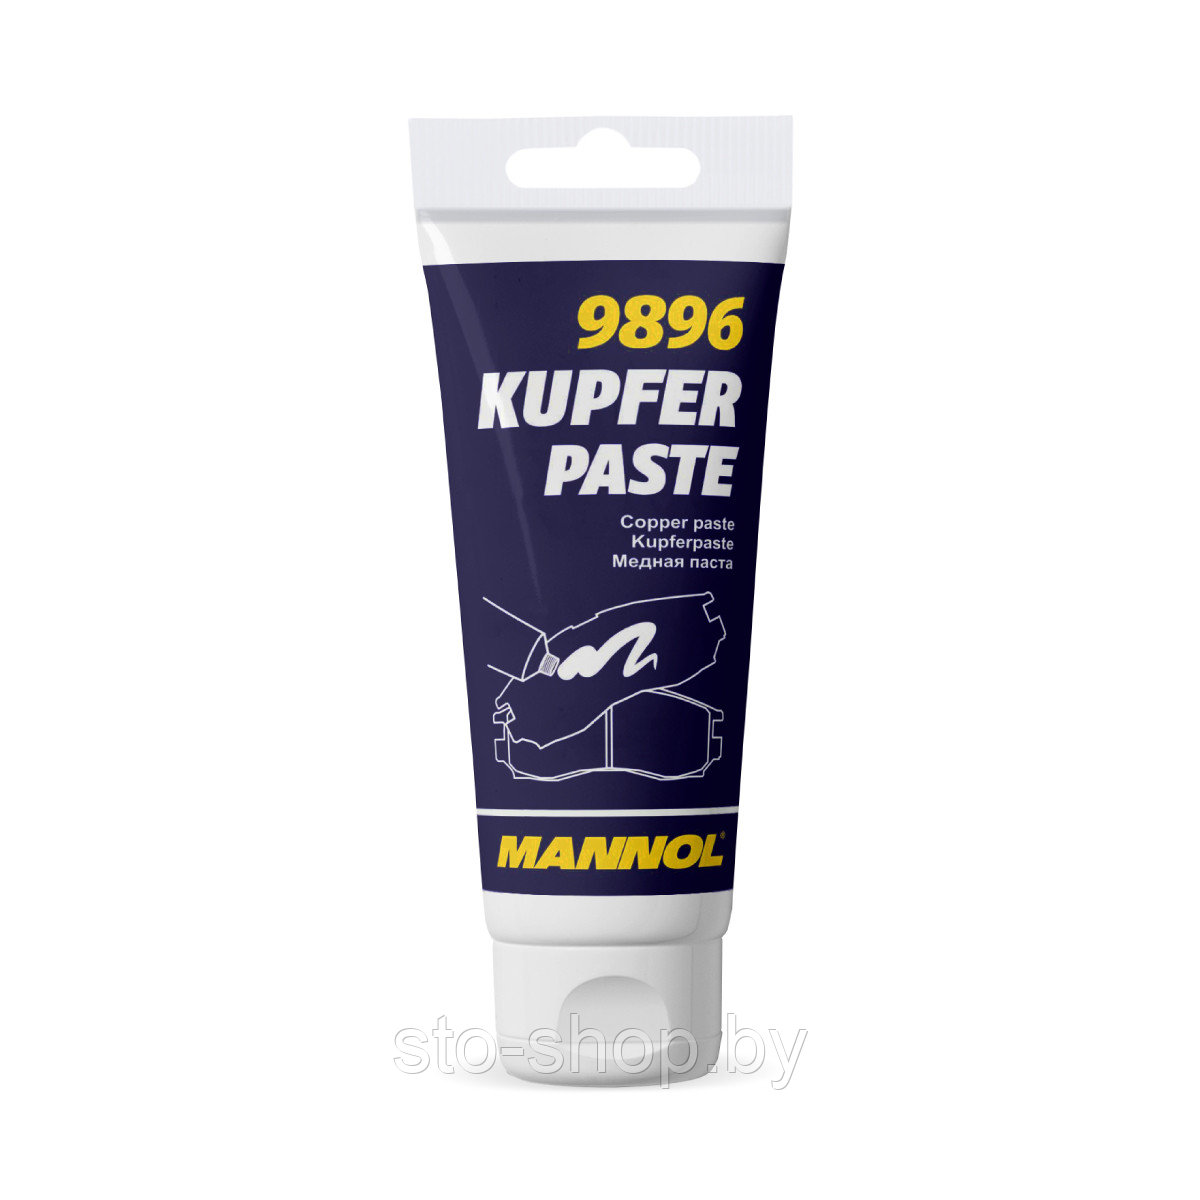 Высокотемпературная медная смазка 50г MANNOL 9896 Kupferpaste: продажа .